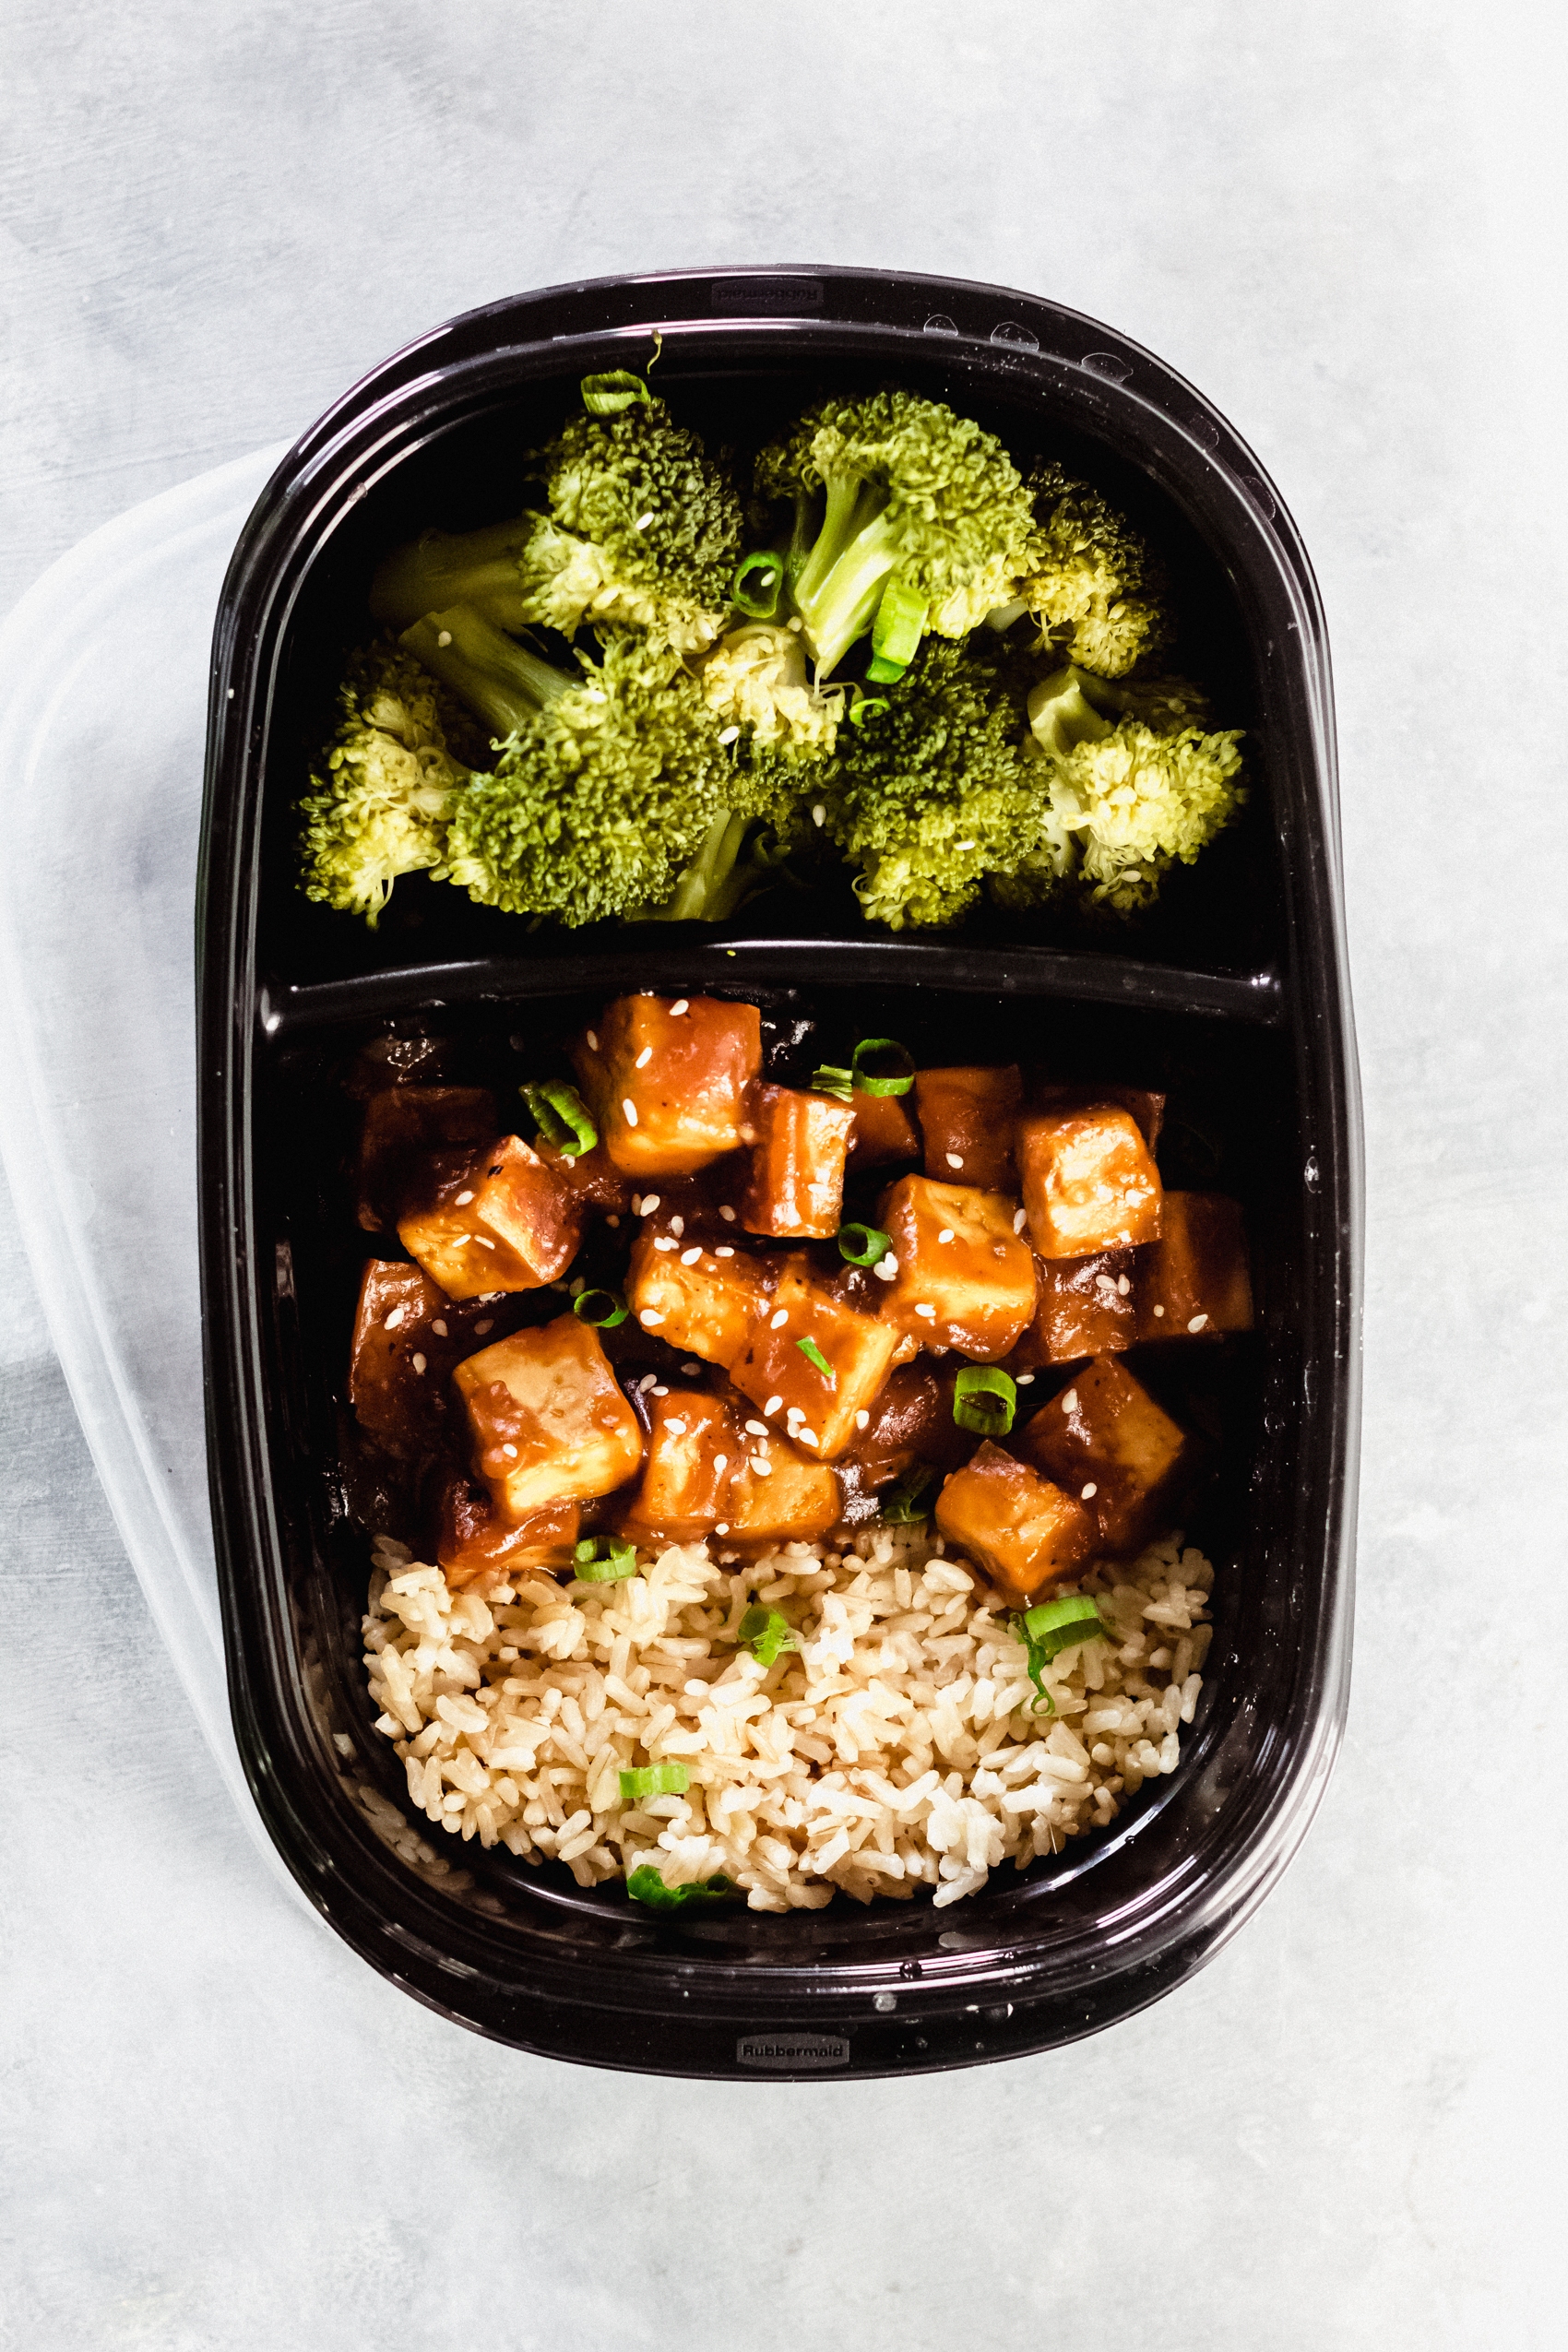 teriyaki sauce on tofu with broccoli and brown rice